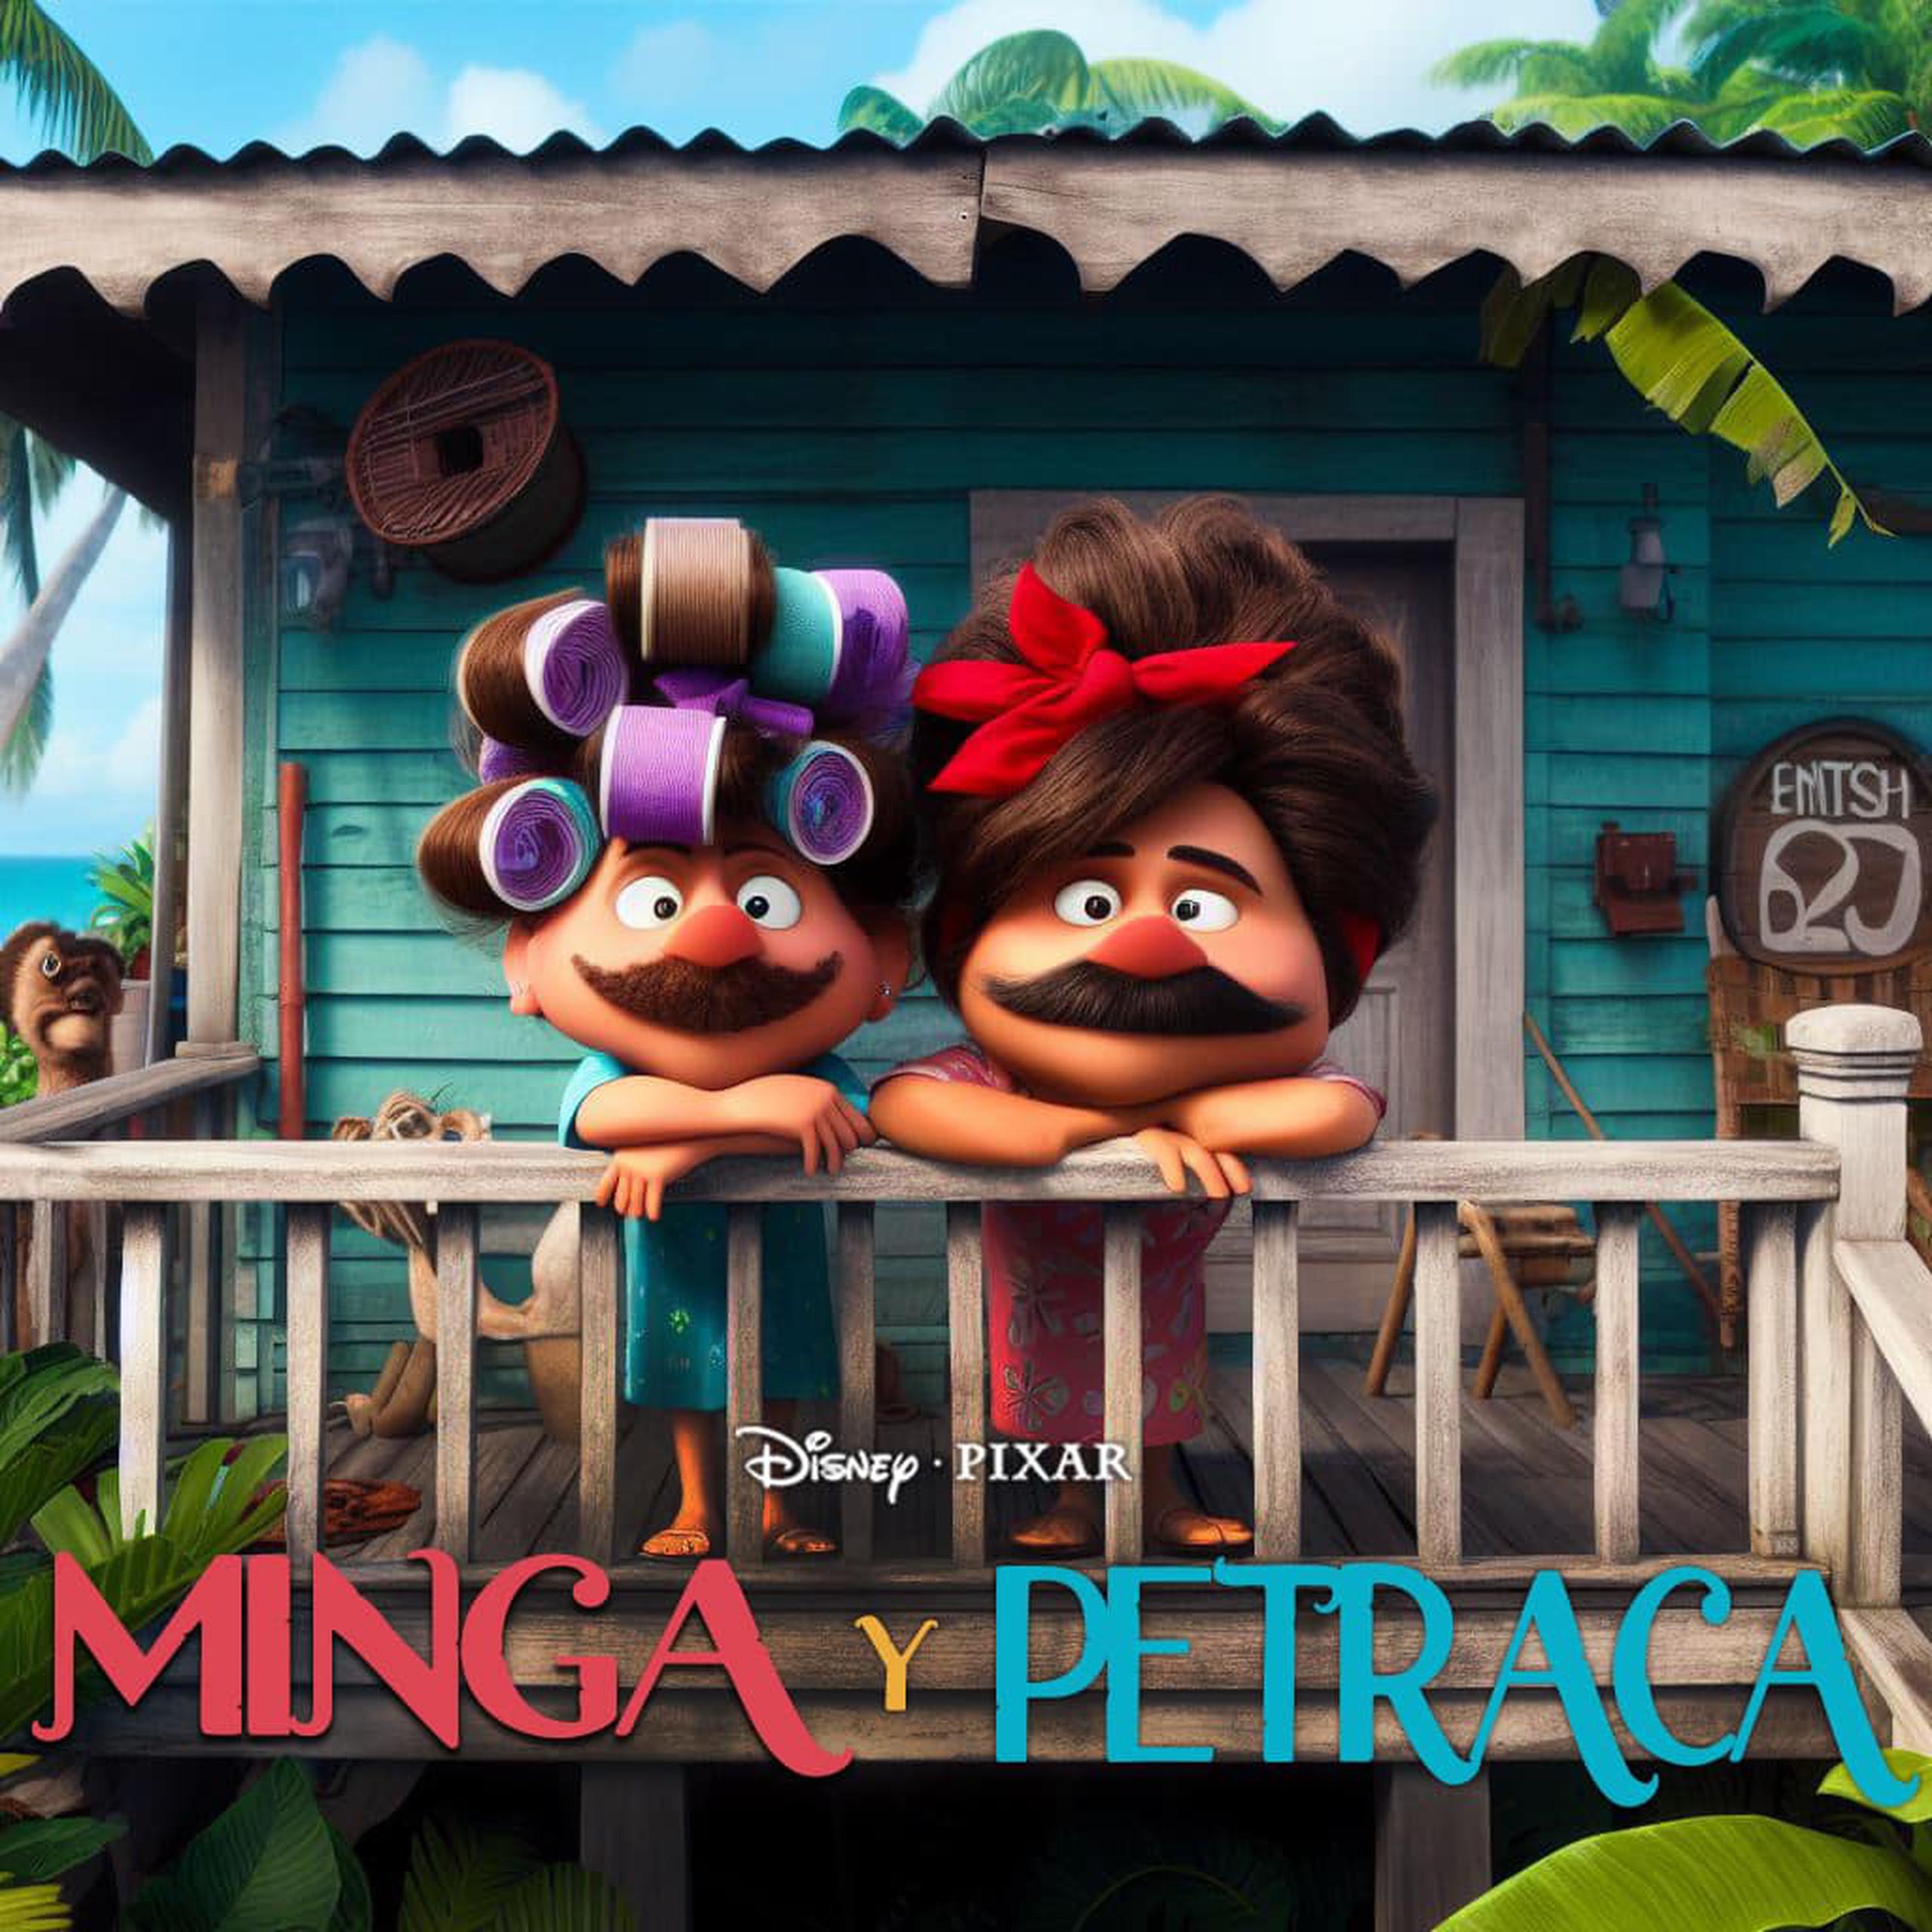 "Minga y Petraca" al estilo Disney Pixar.